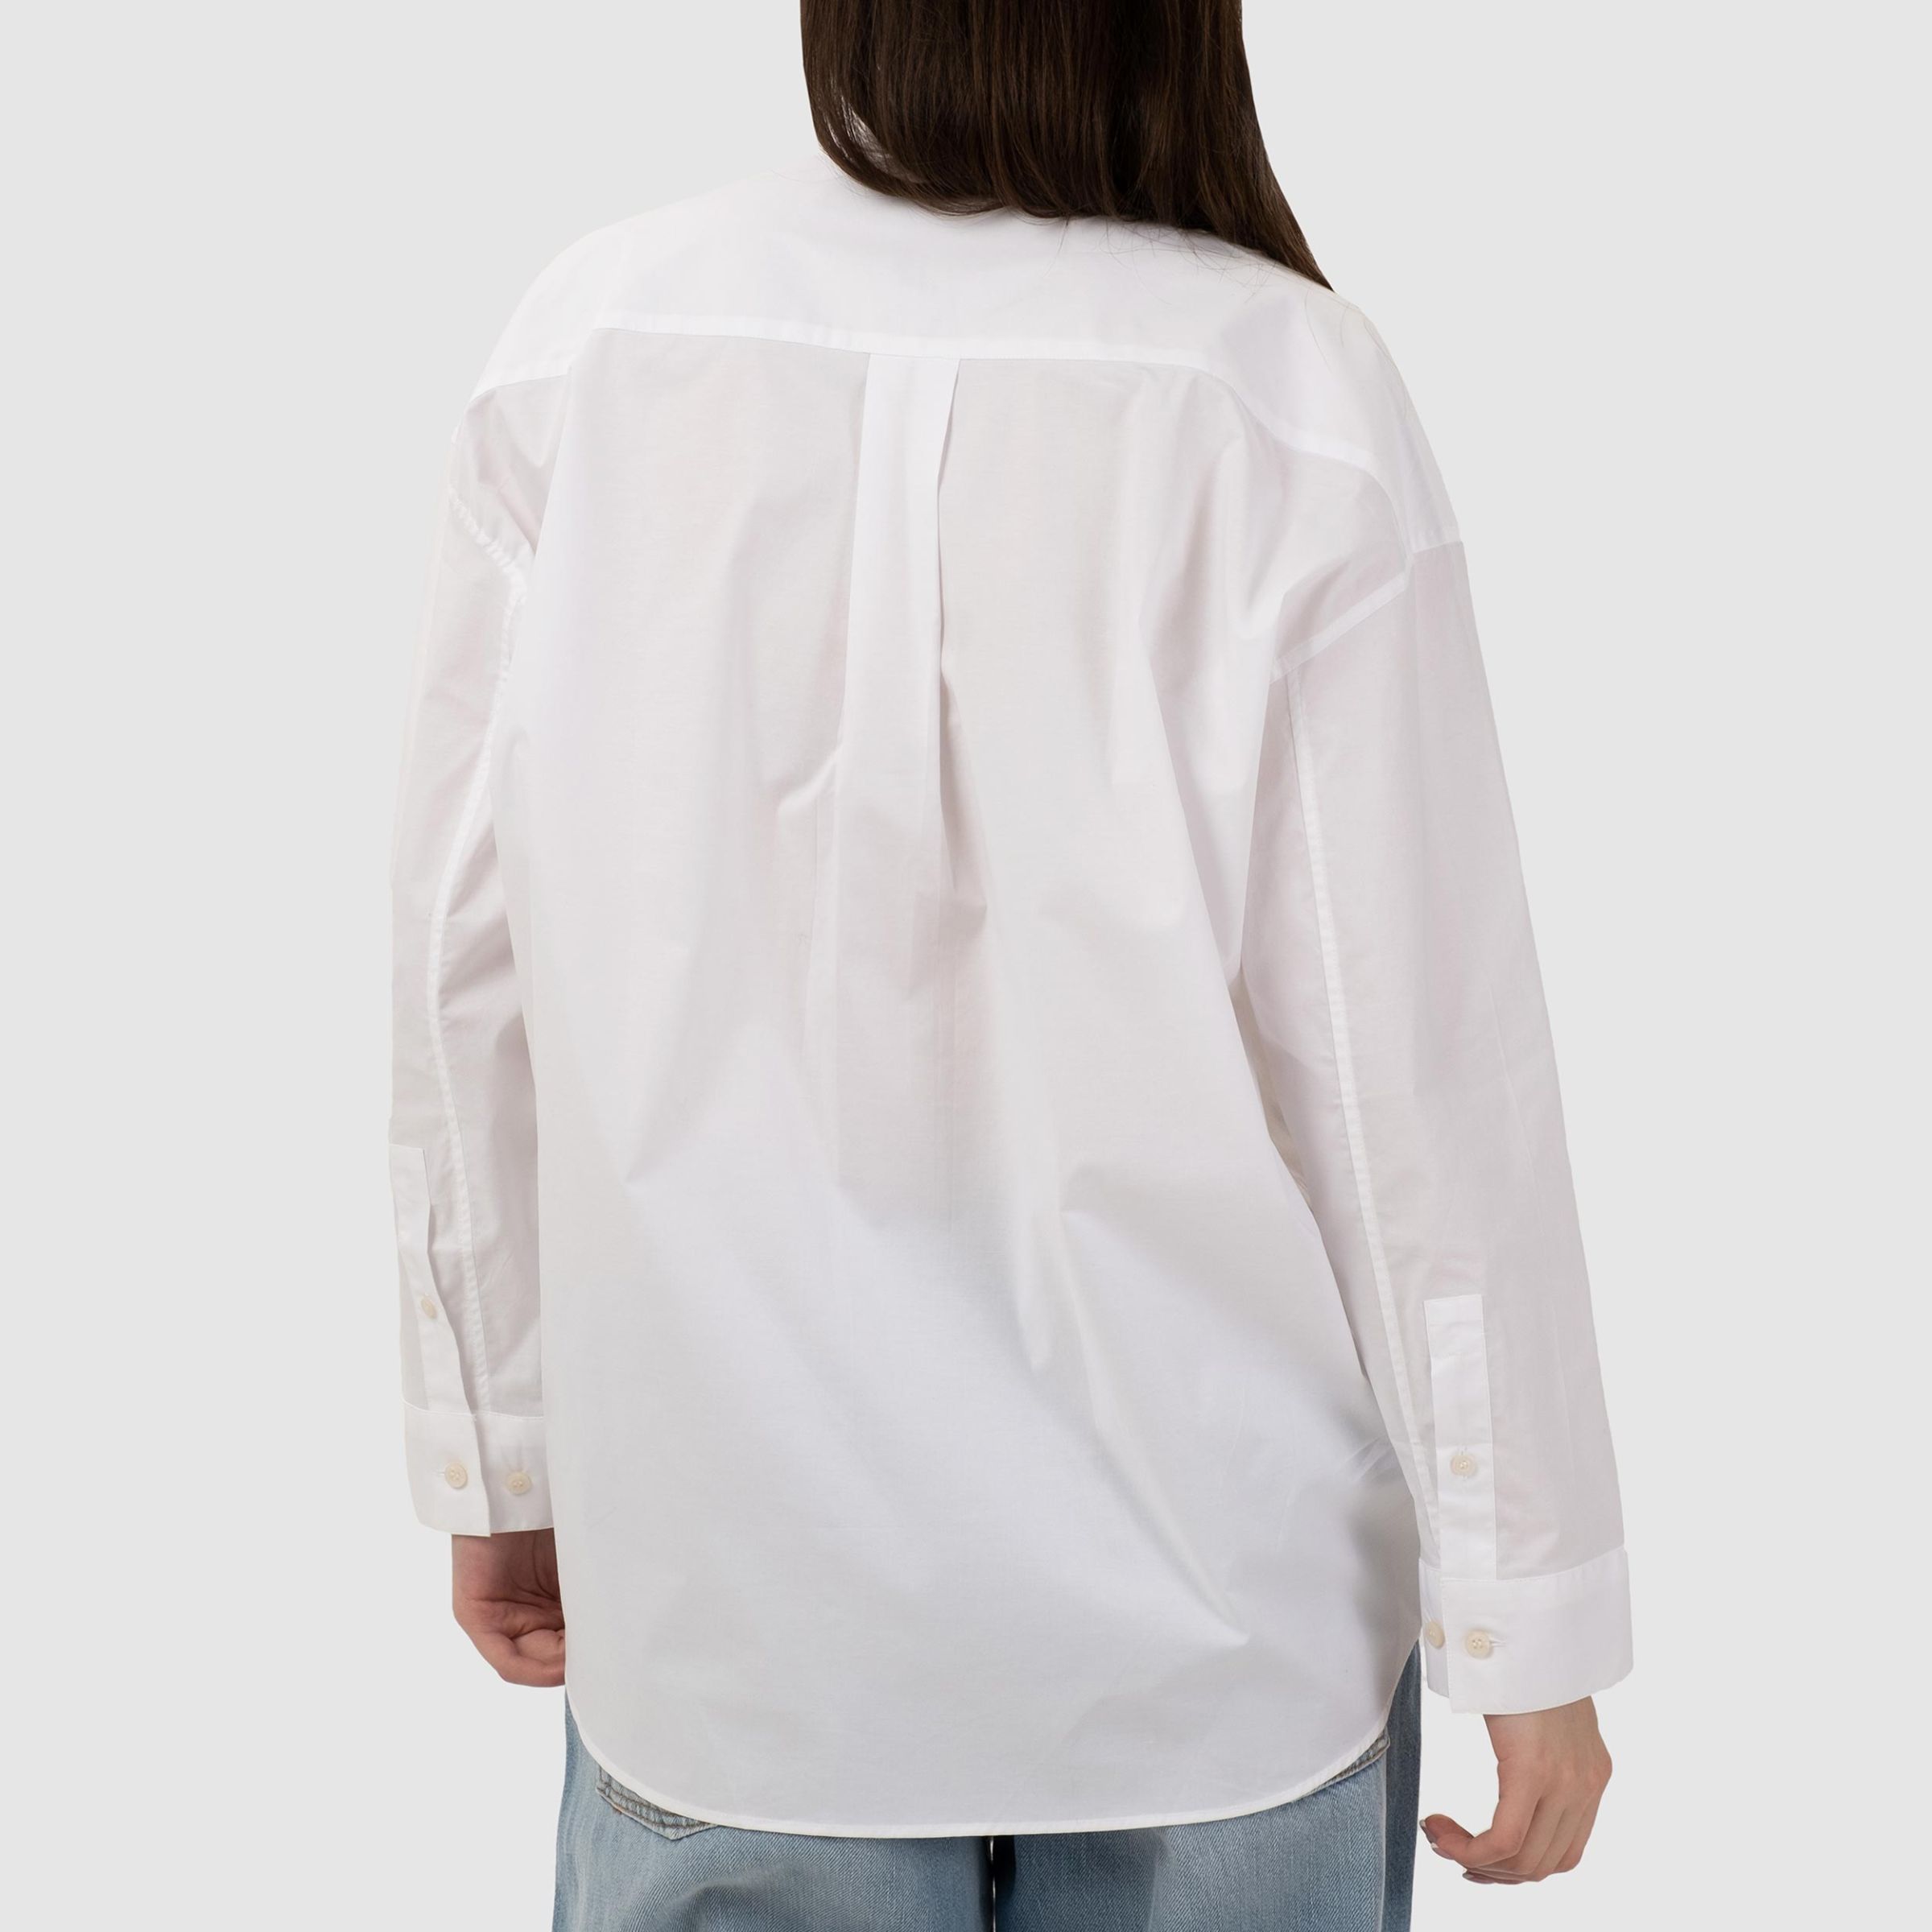 Рубашка Acne Studios белая